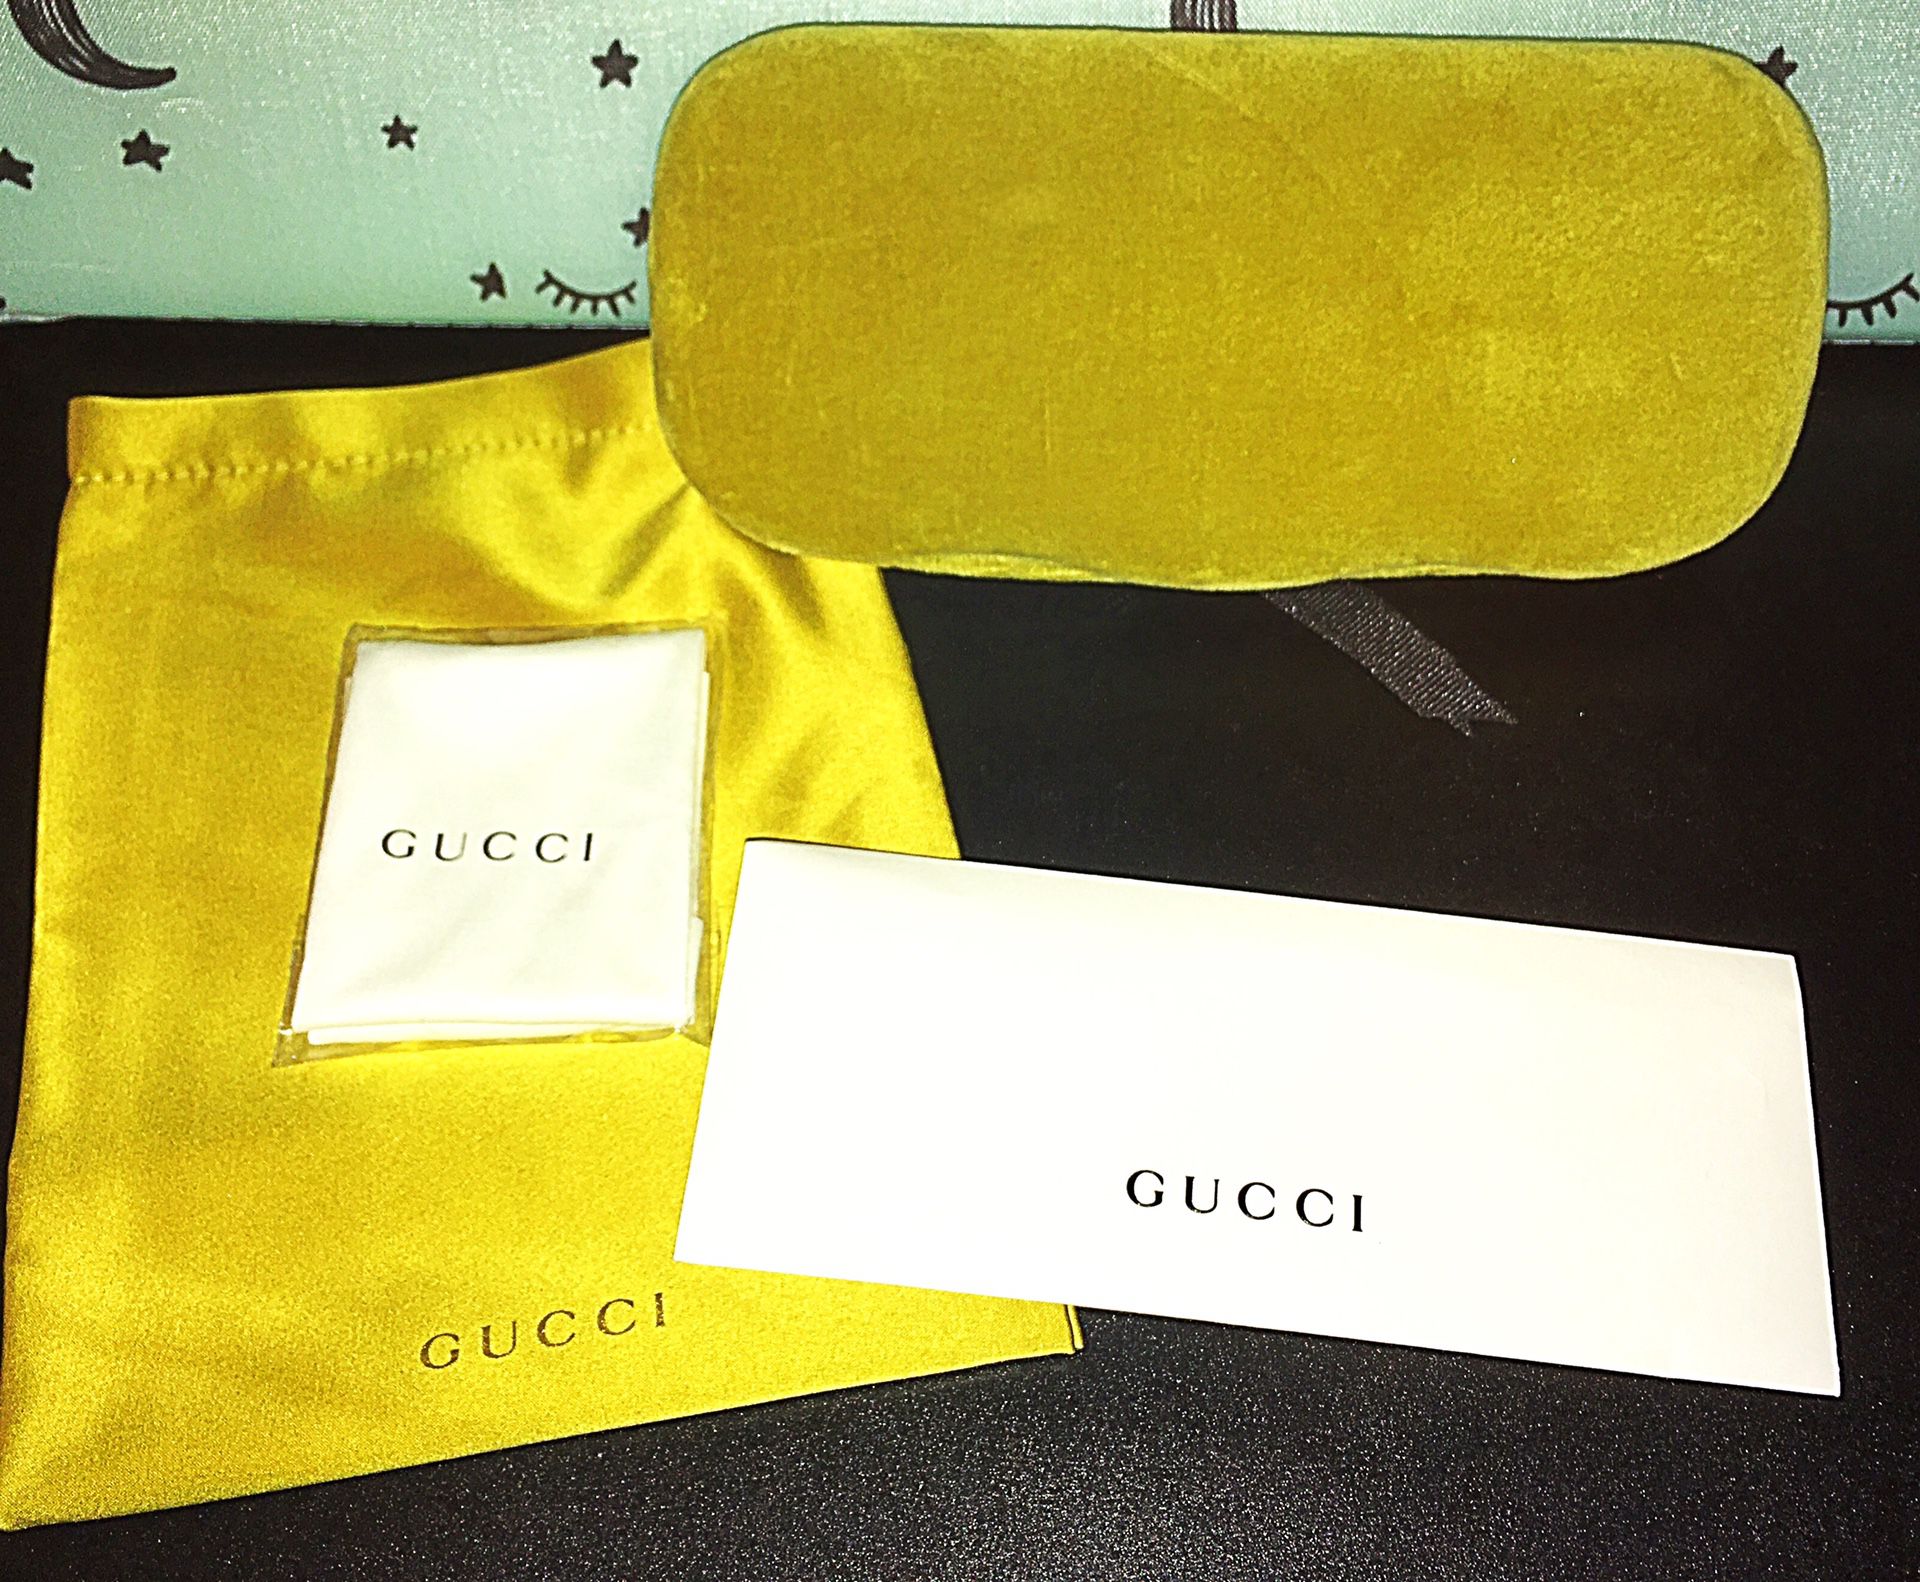 Gucci glasses case & accessories